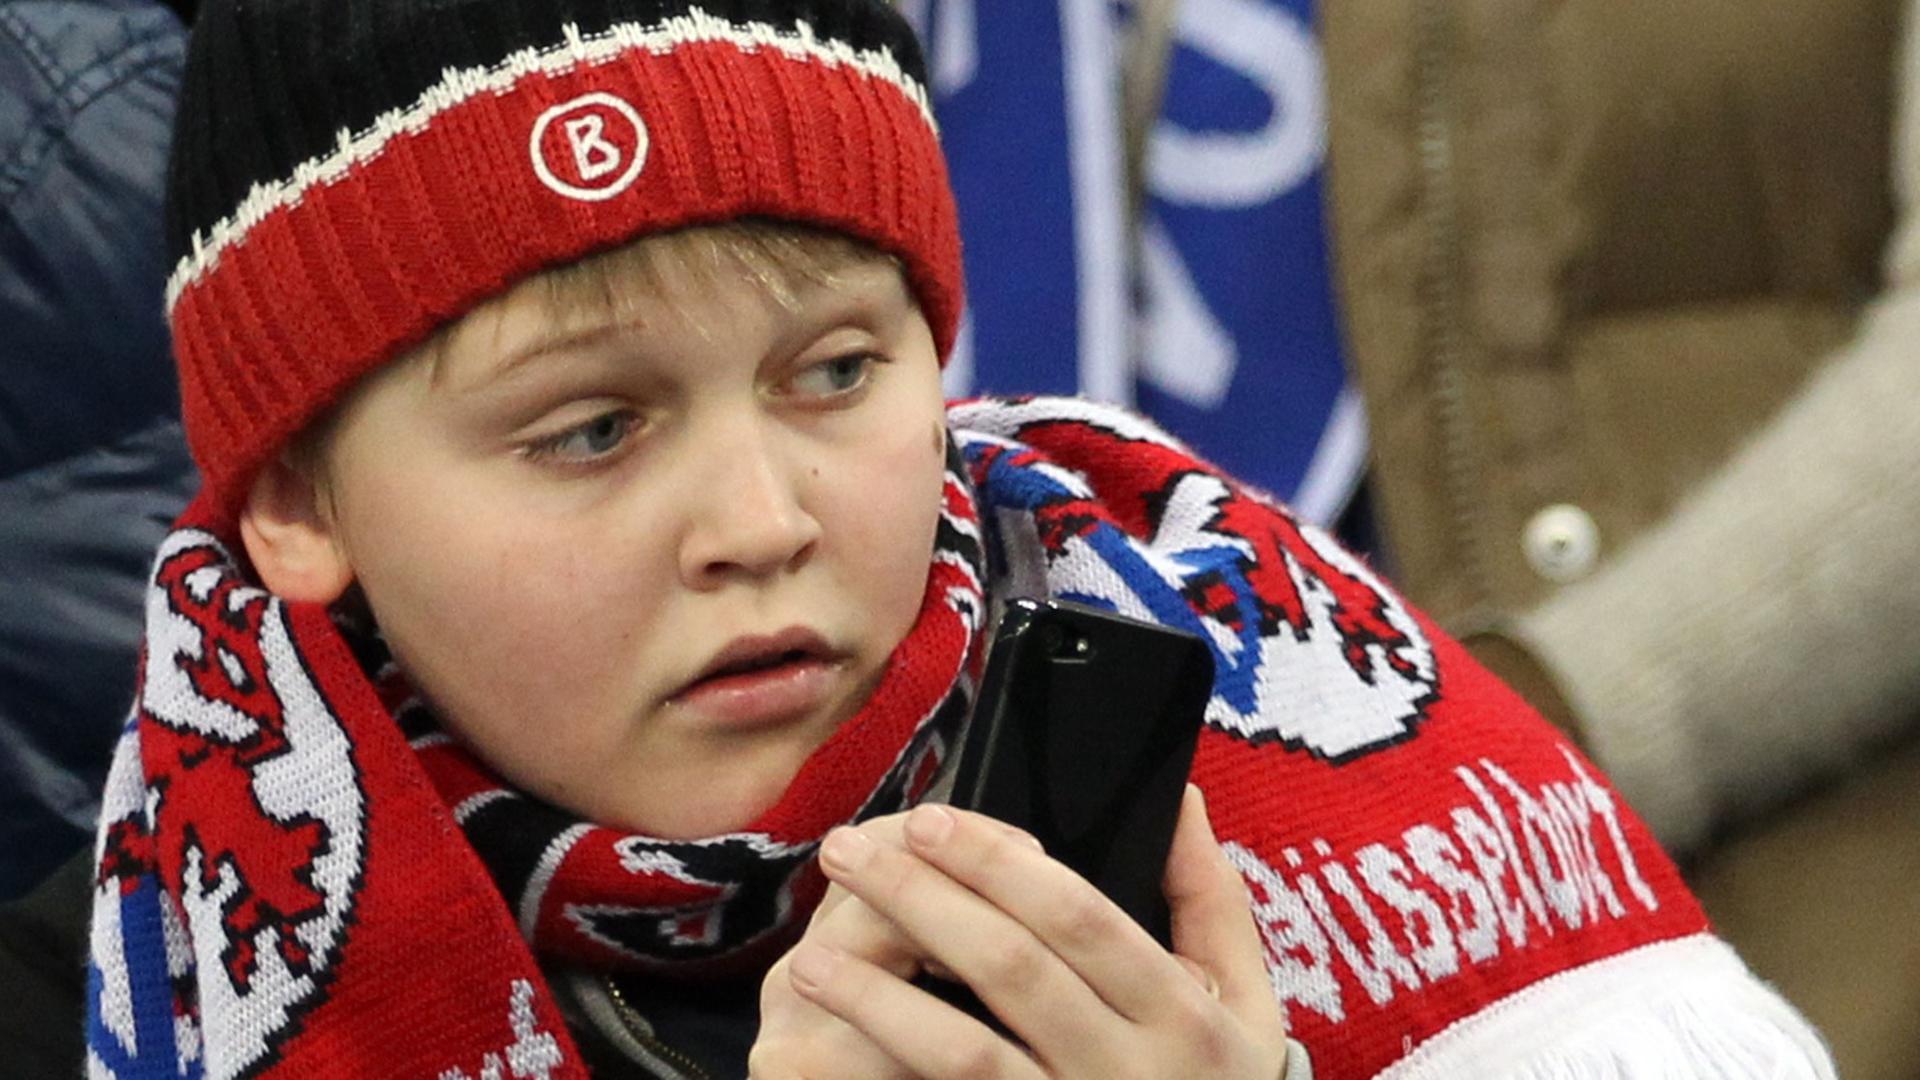 Ein junger Düsseldorfer Fan hält gespannt ein Mobiltelefon in der Hand.